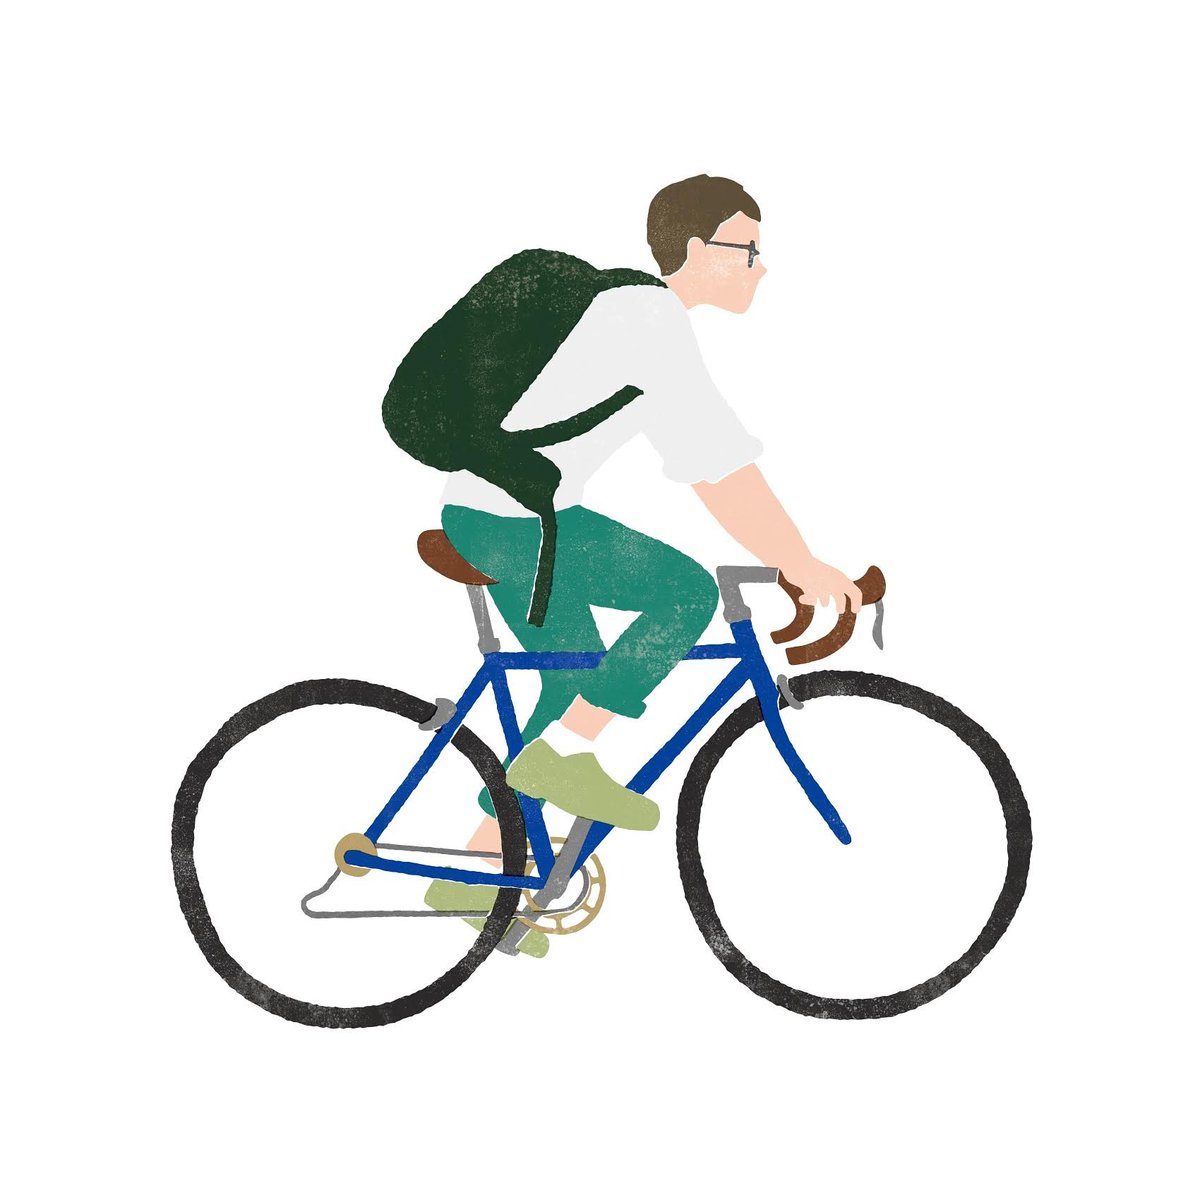 すずき はるか イラスト Map用に描いたイラスト 自転車に乗る男性 1日1絵 イラスト イラストレーター イラストグラム 絵描きさんと繋がりたい イラストレーターさんと繋がりたい Illustration Illustgram Szkhrkillustration Illustrator